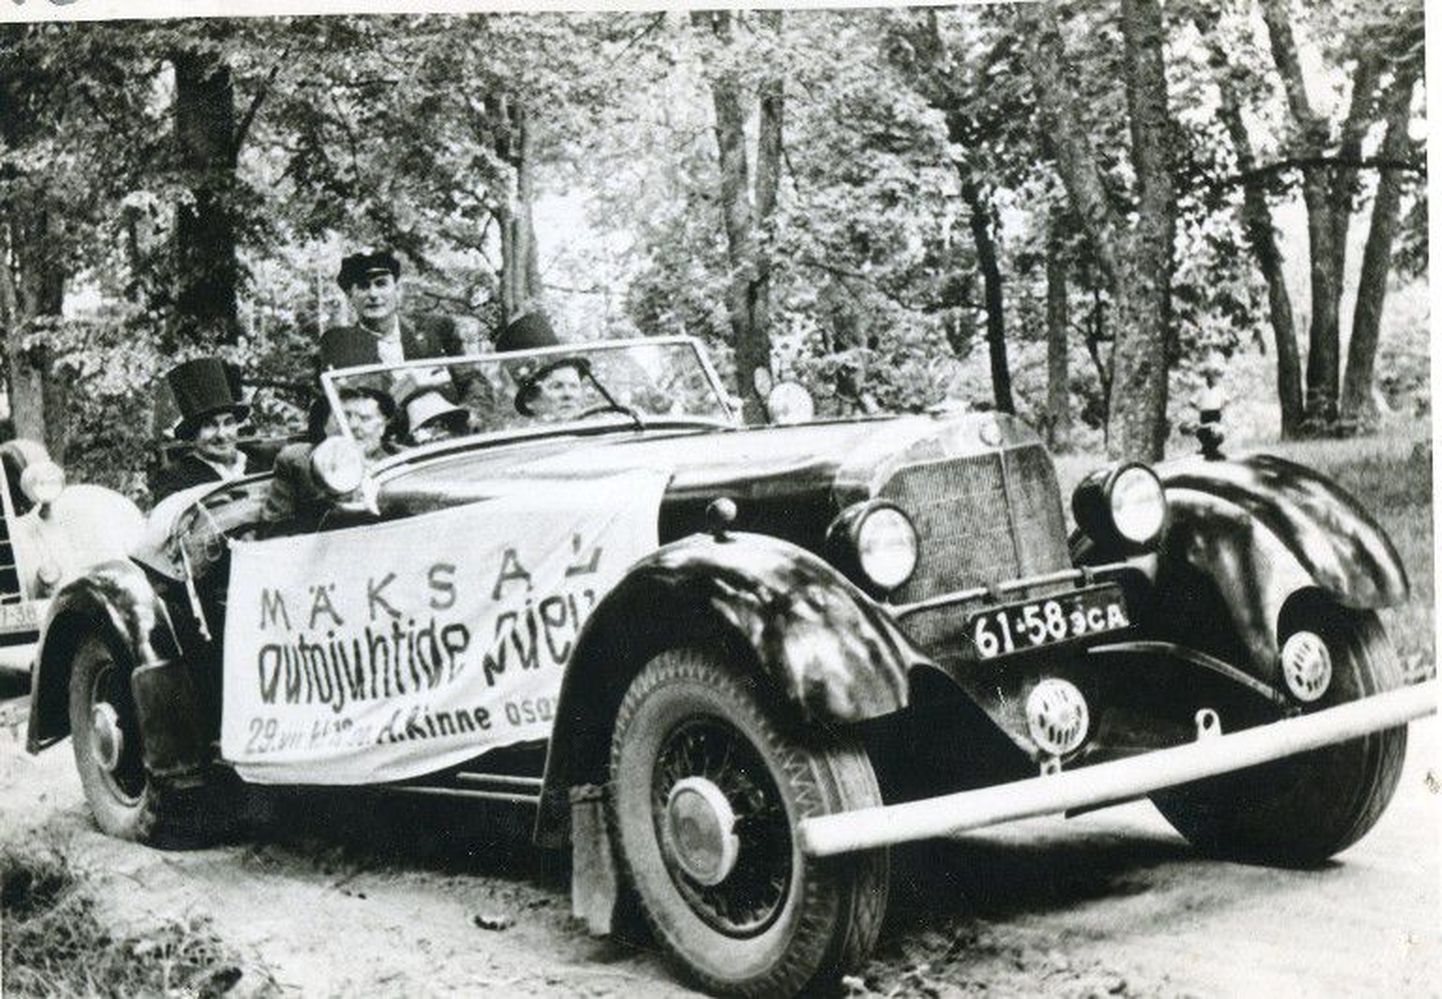 Fotomälestus 1966. aasta juulis Mäksal peetud esimesest autojuhtide kokkutulekust, mida loetakse Eesti vanatehnikaliikumise alguseks.